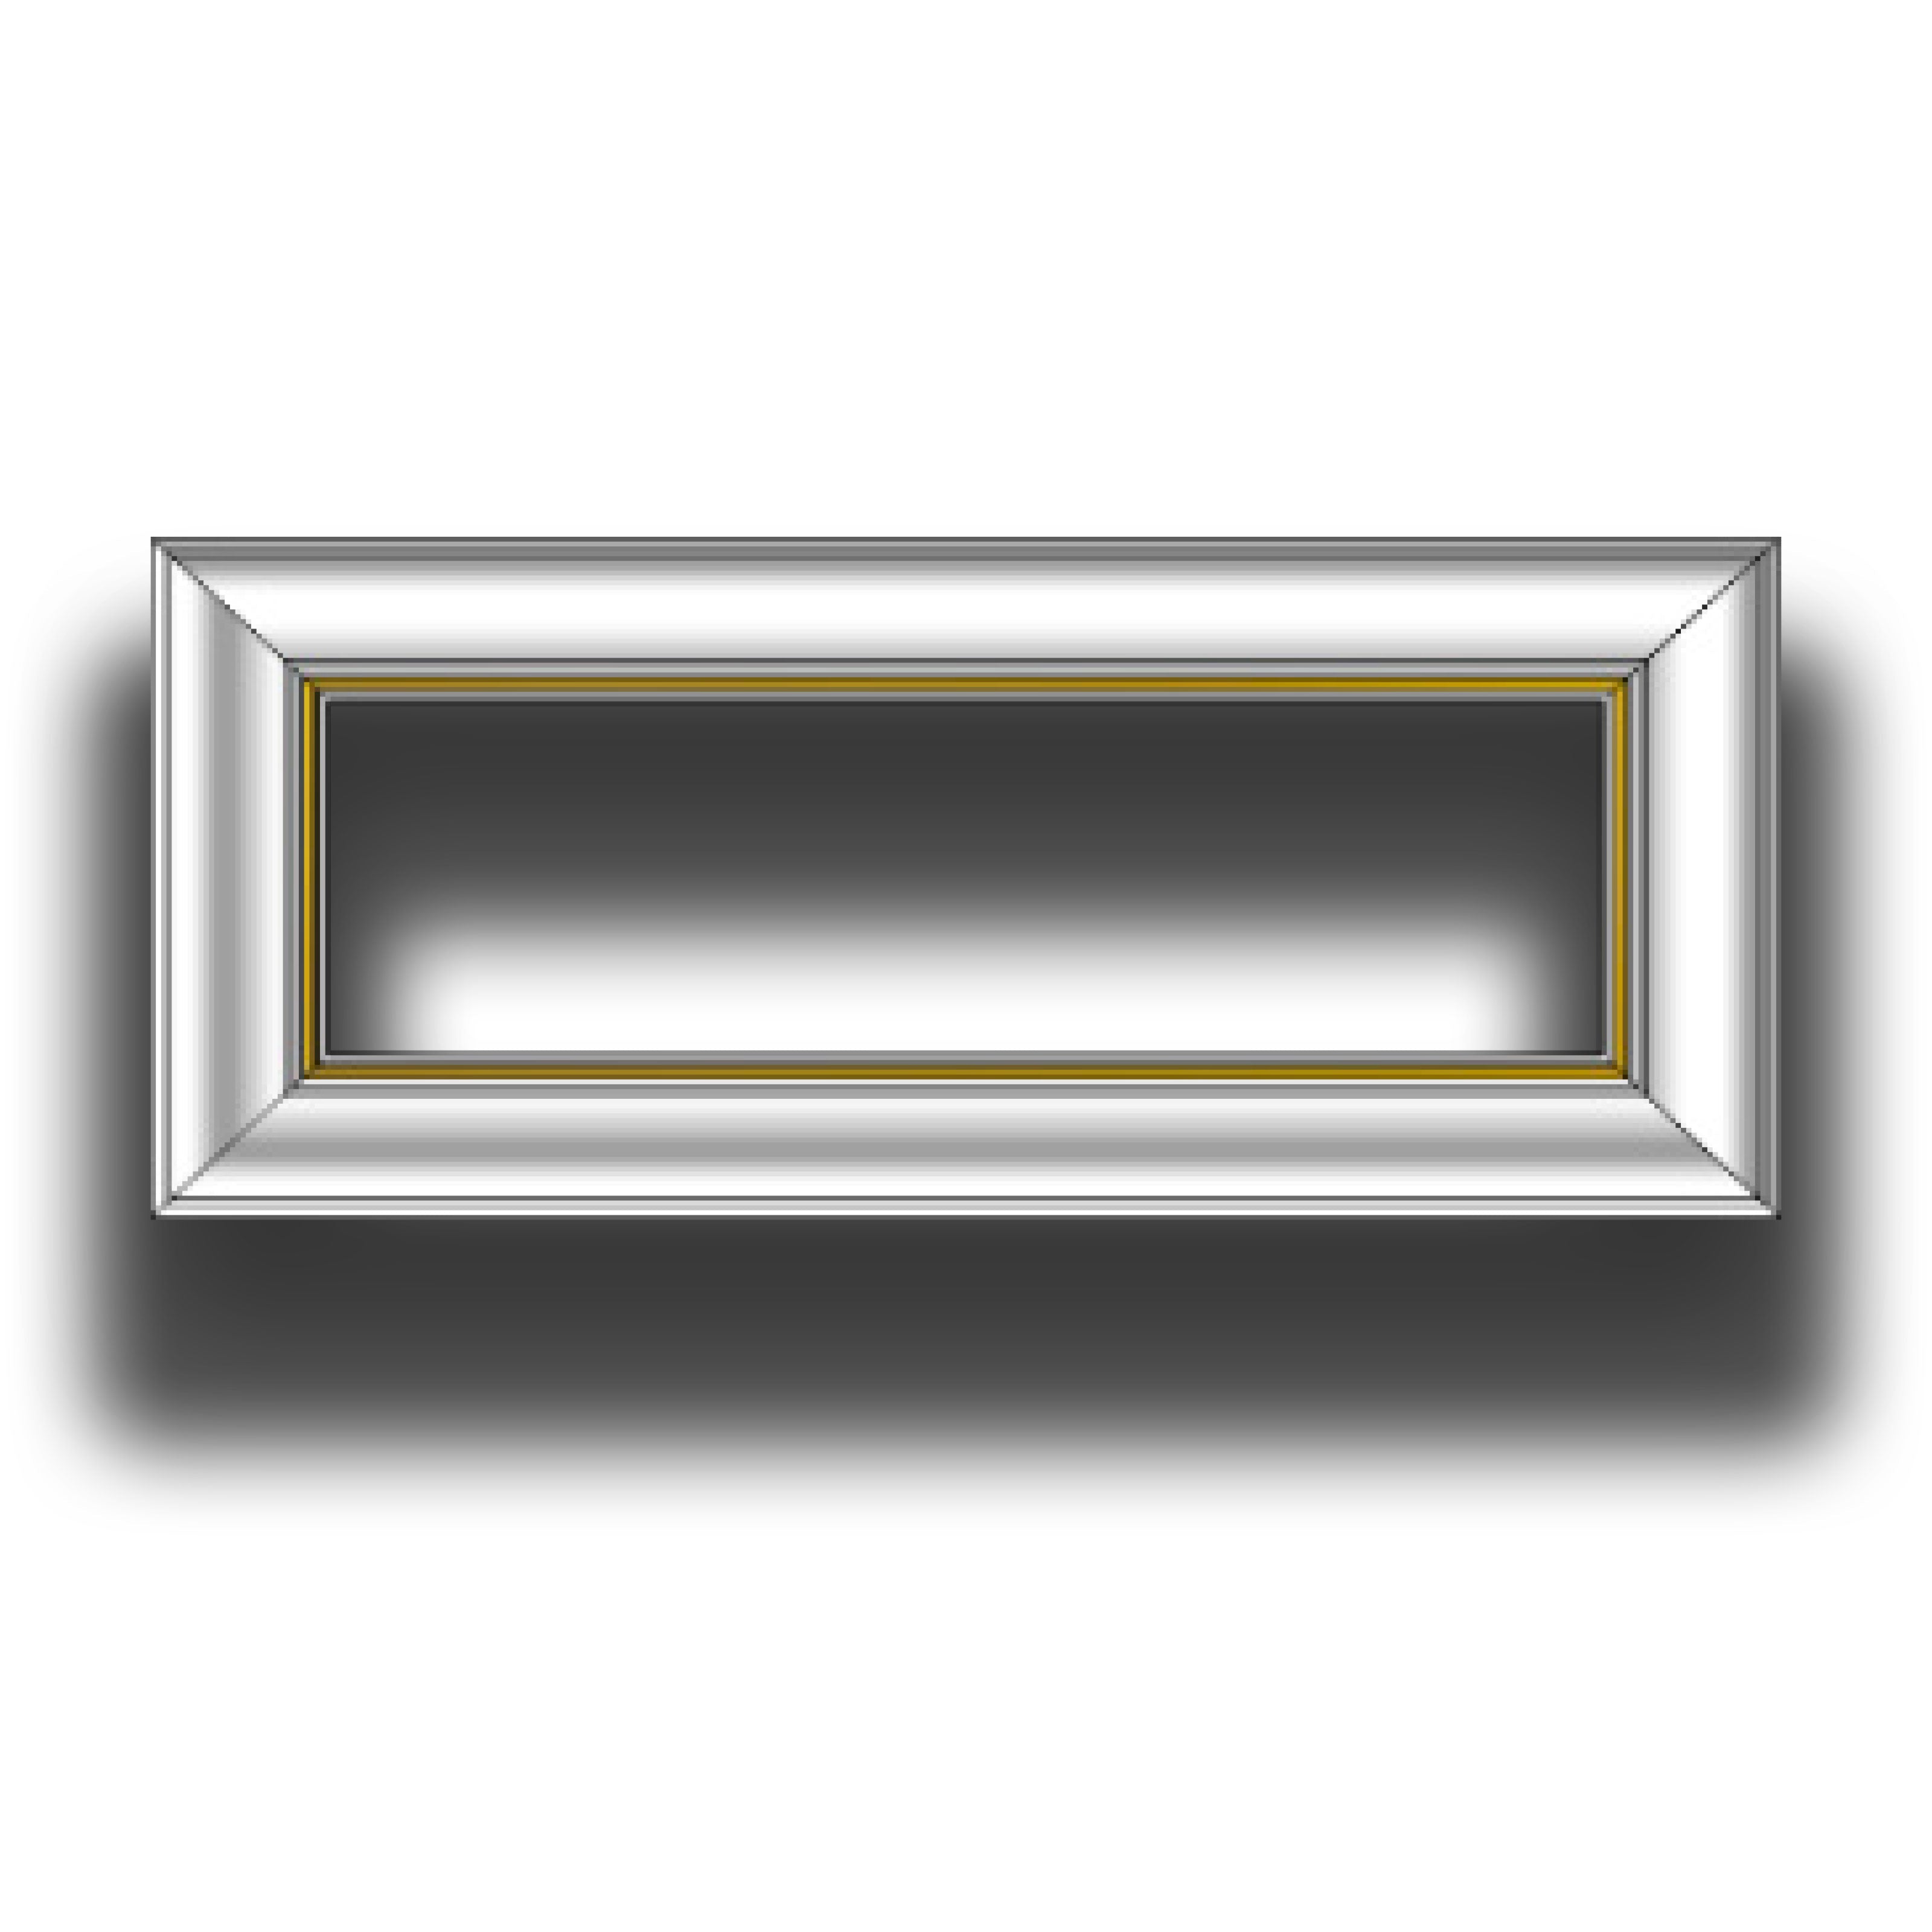 4 barre intere PRETAGLIATE AD ANGOLO per Bugna Boiserie in polimeri linea GOLD (filo oro) bianco Avorio 9010 varie dimensioni - Eternal Parquet